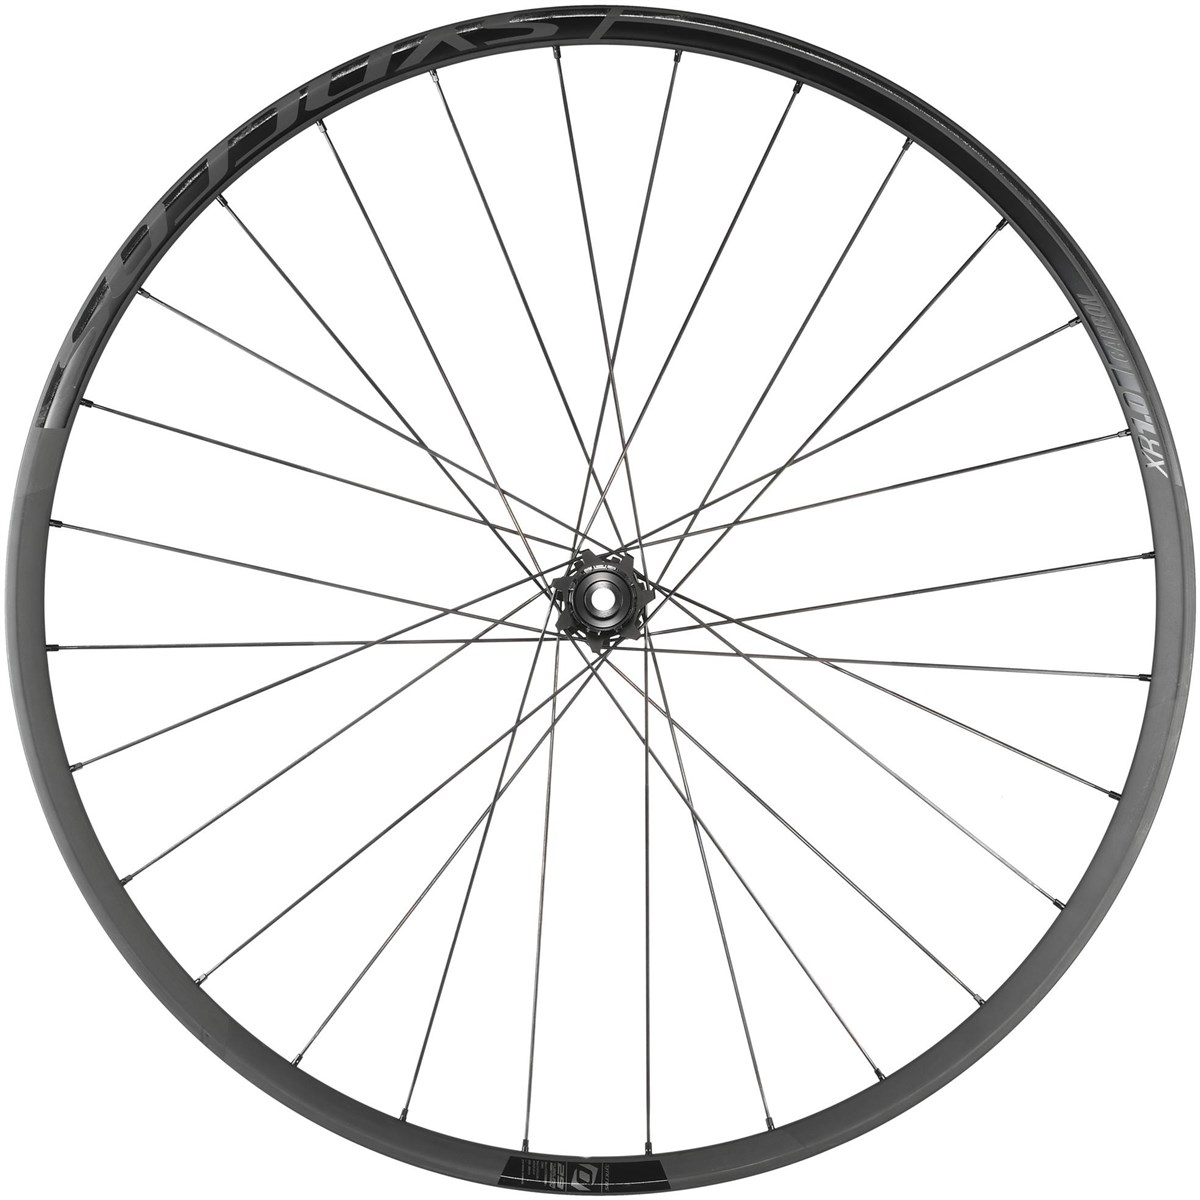 Syncros XR1.0 Carbon 27.5 650b Rear MTB Wheel